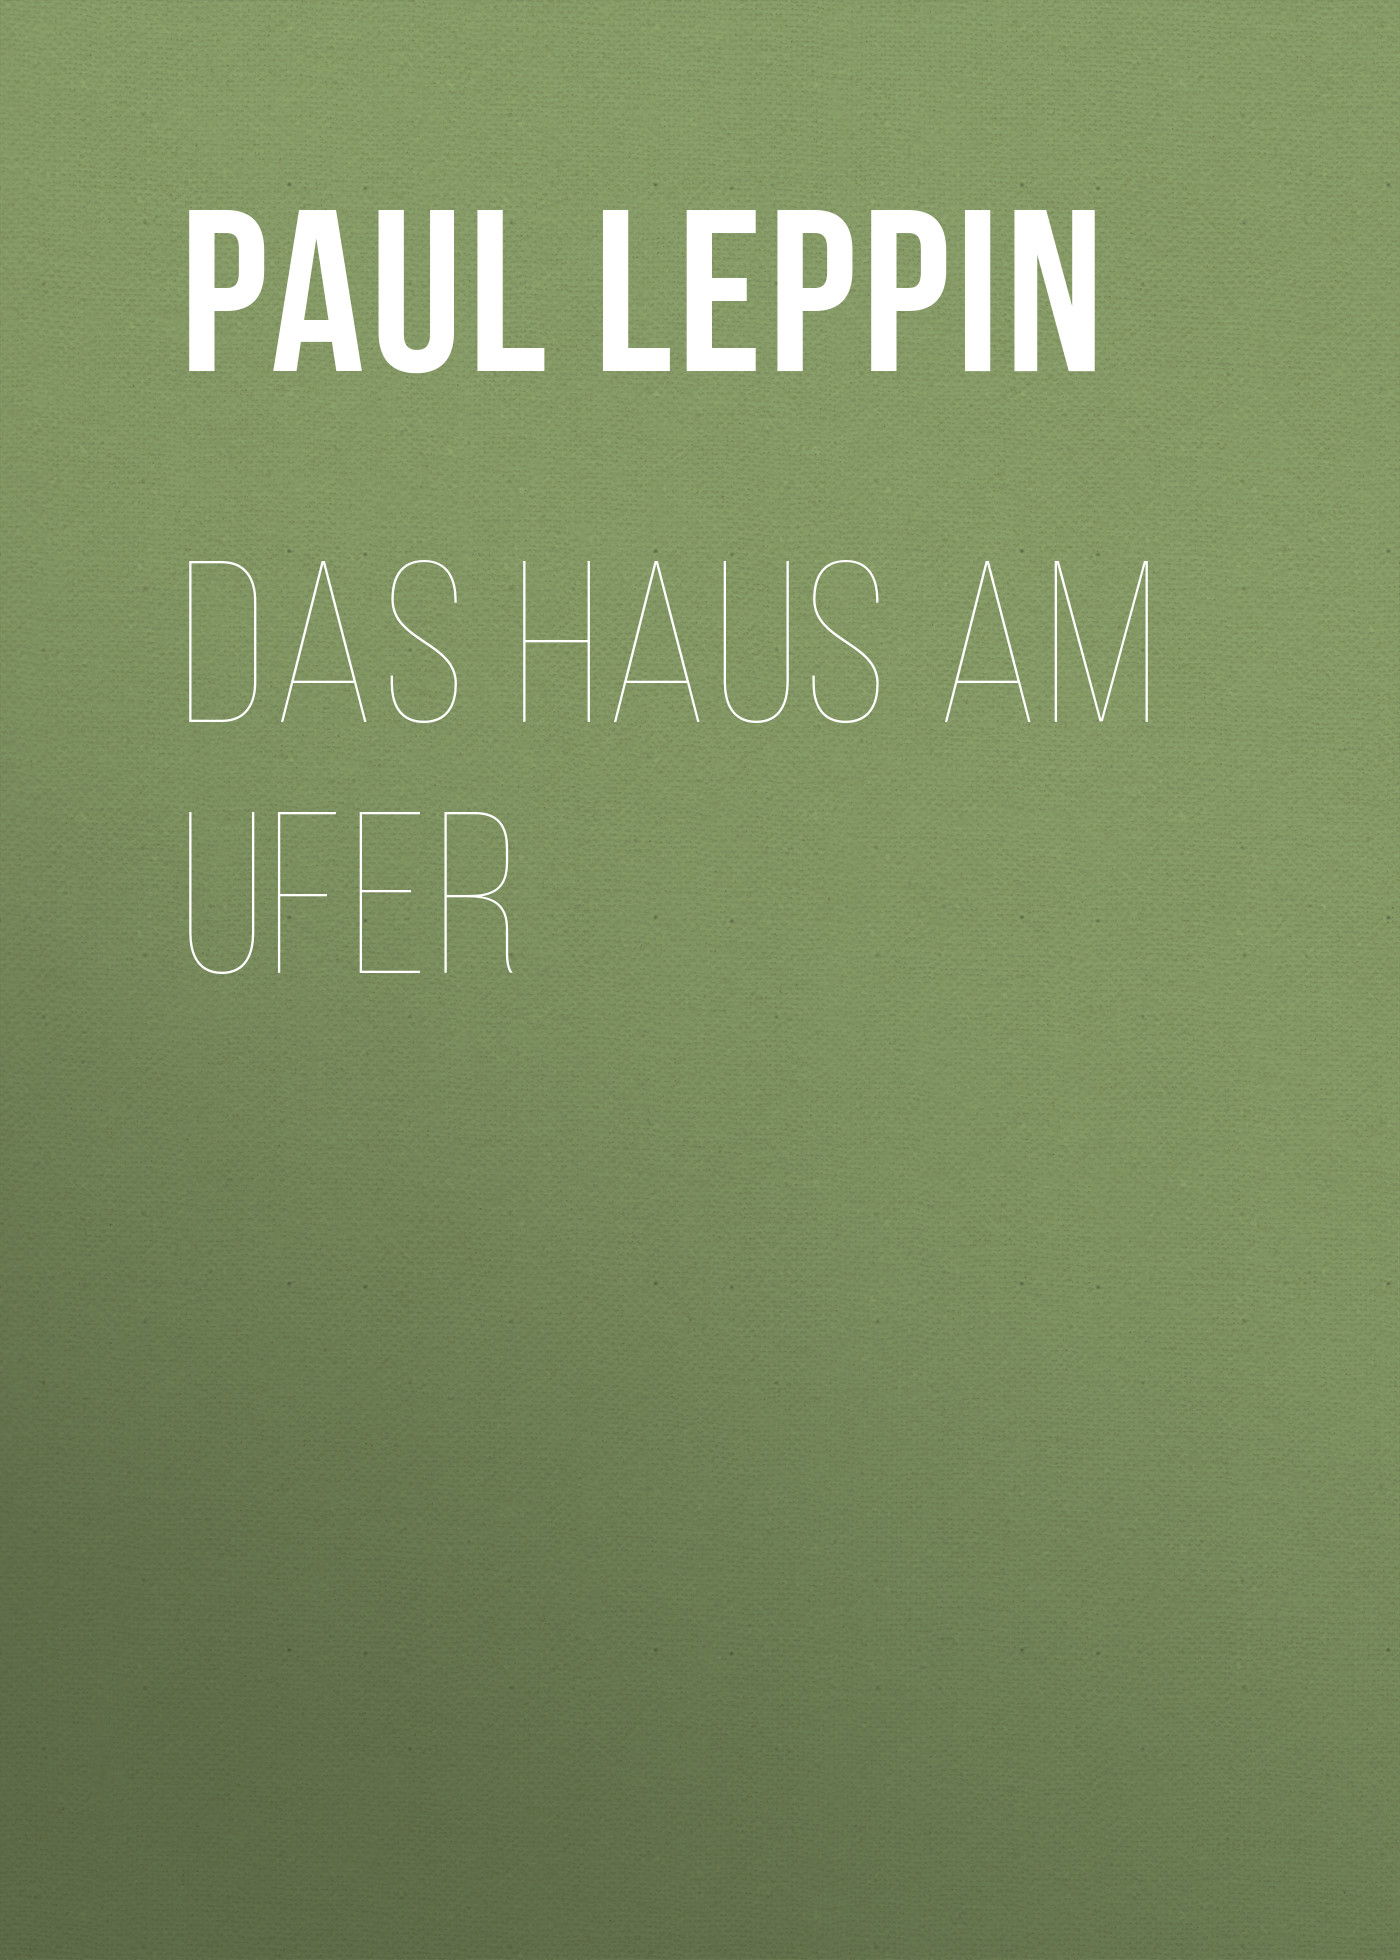 Книга Das Haus am Ufer из серии , созданная Paul Leppin, может относится к жанру Зарубежная классика. Стоимость электронной книги Das Haus am Ufer с идентификатором 48634084 составляет 0 руб.